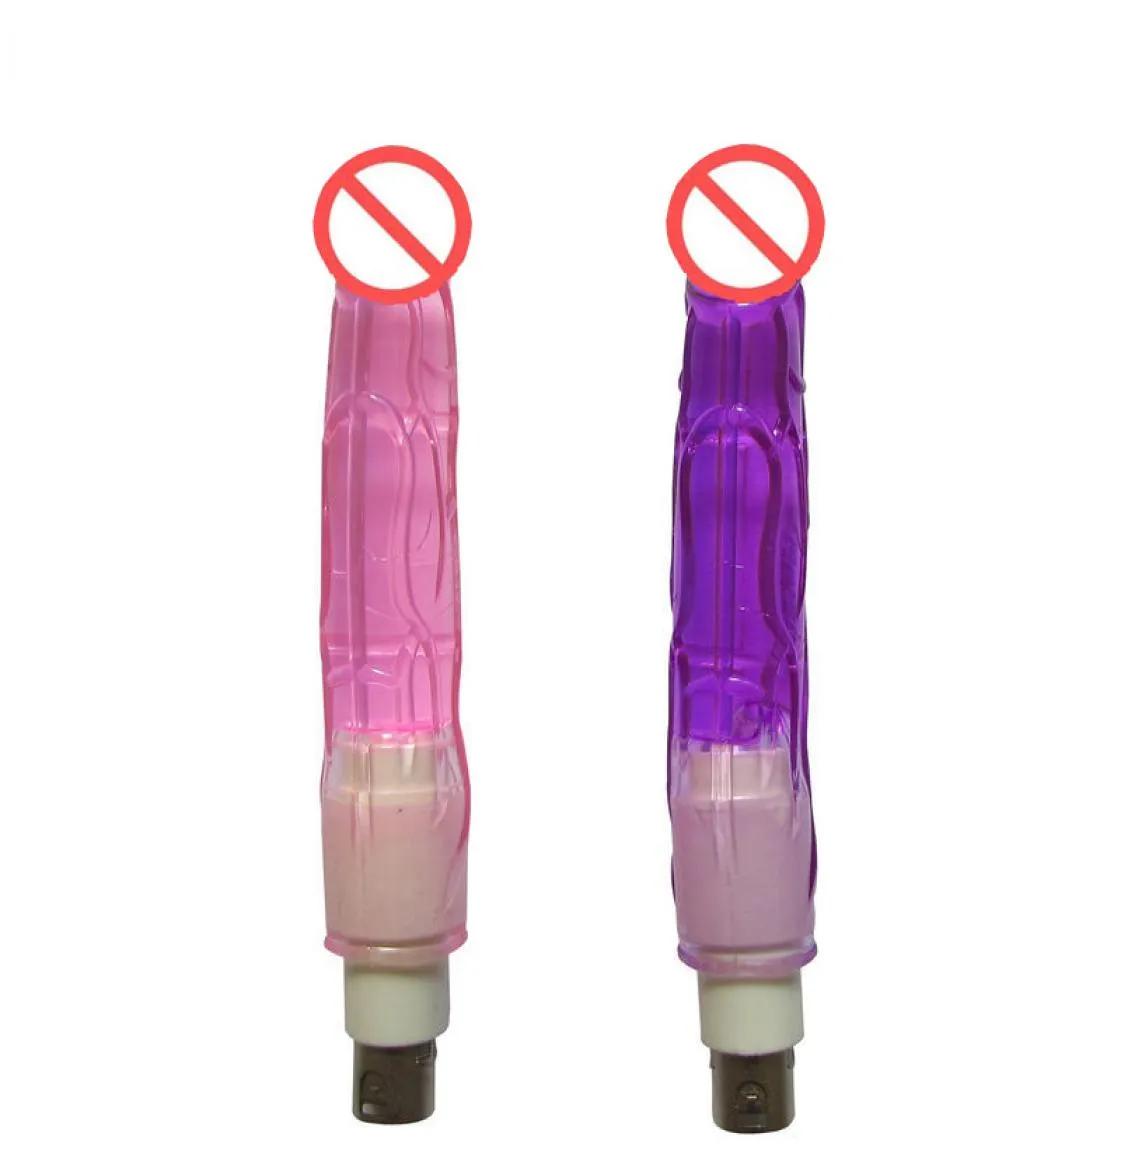 Attachement anal pour la mitrailleuse sexuelle automatique Dildo anal 18 cm de long et 2 cm largeur6127949